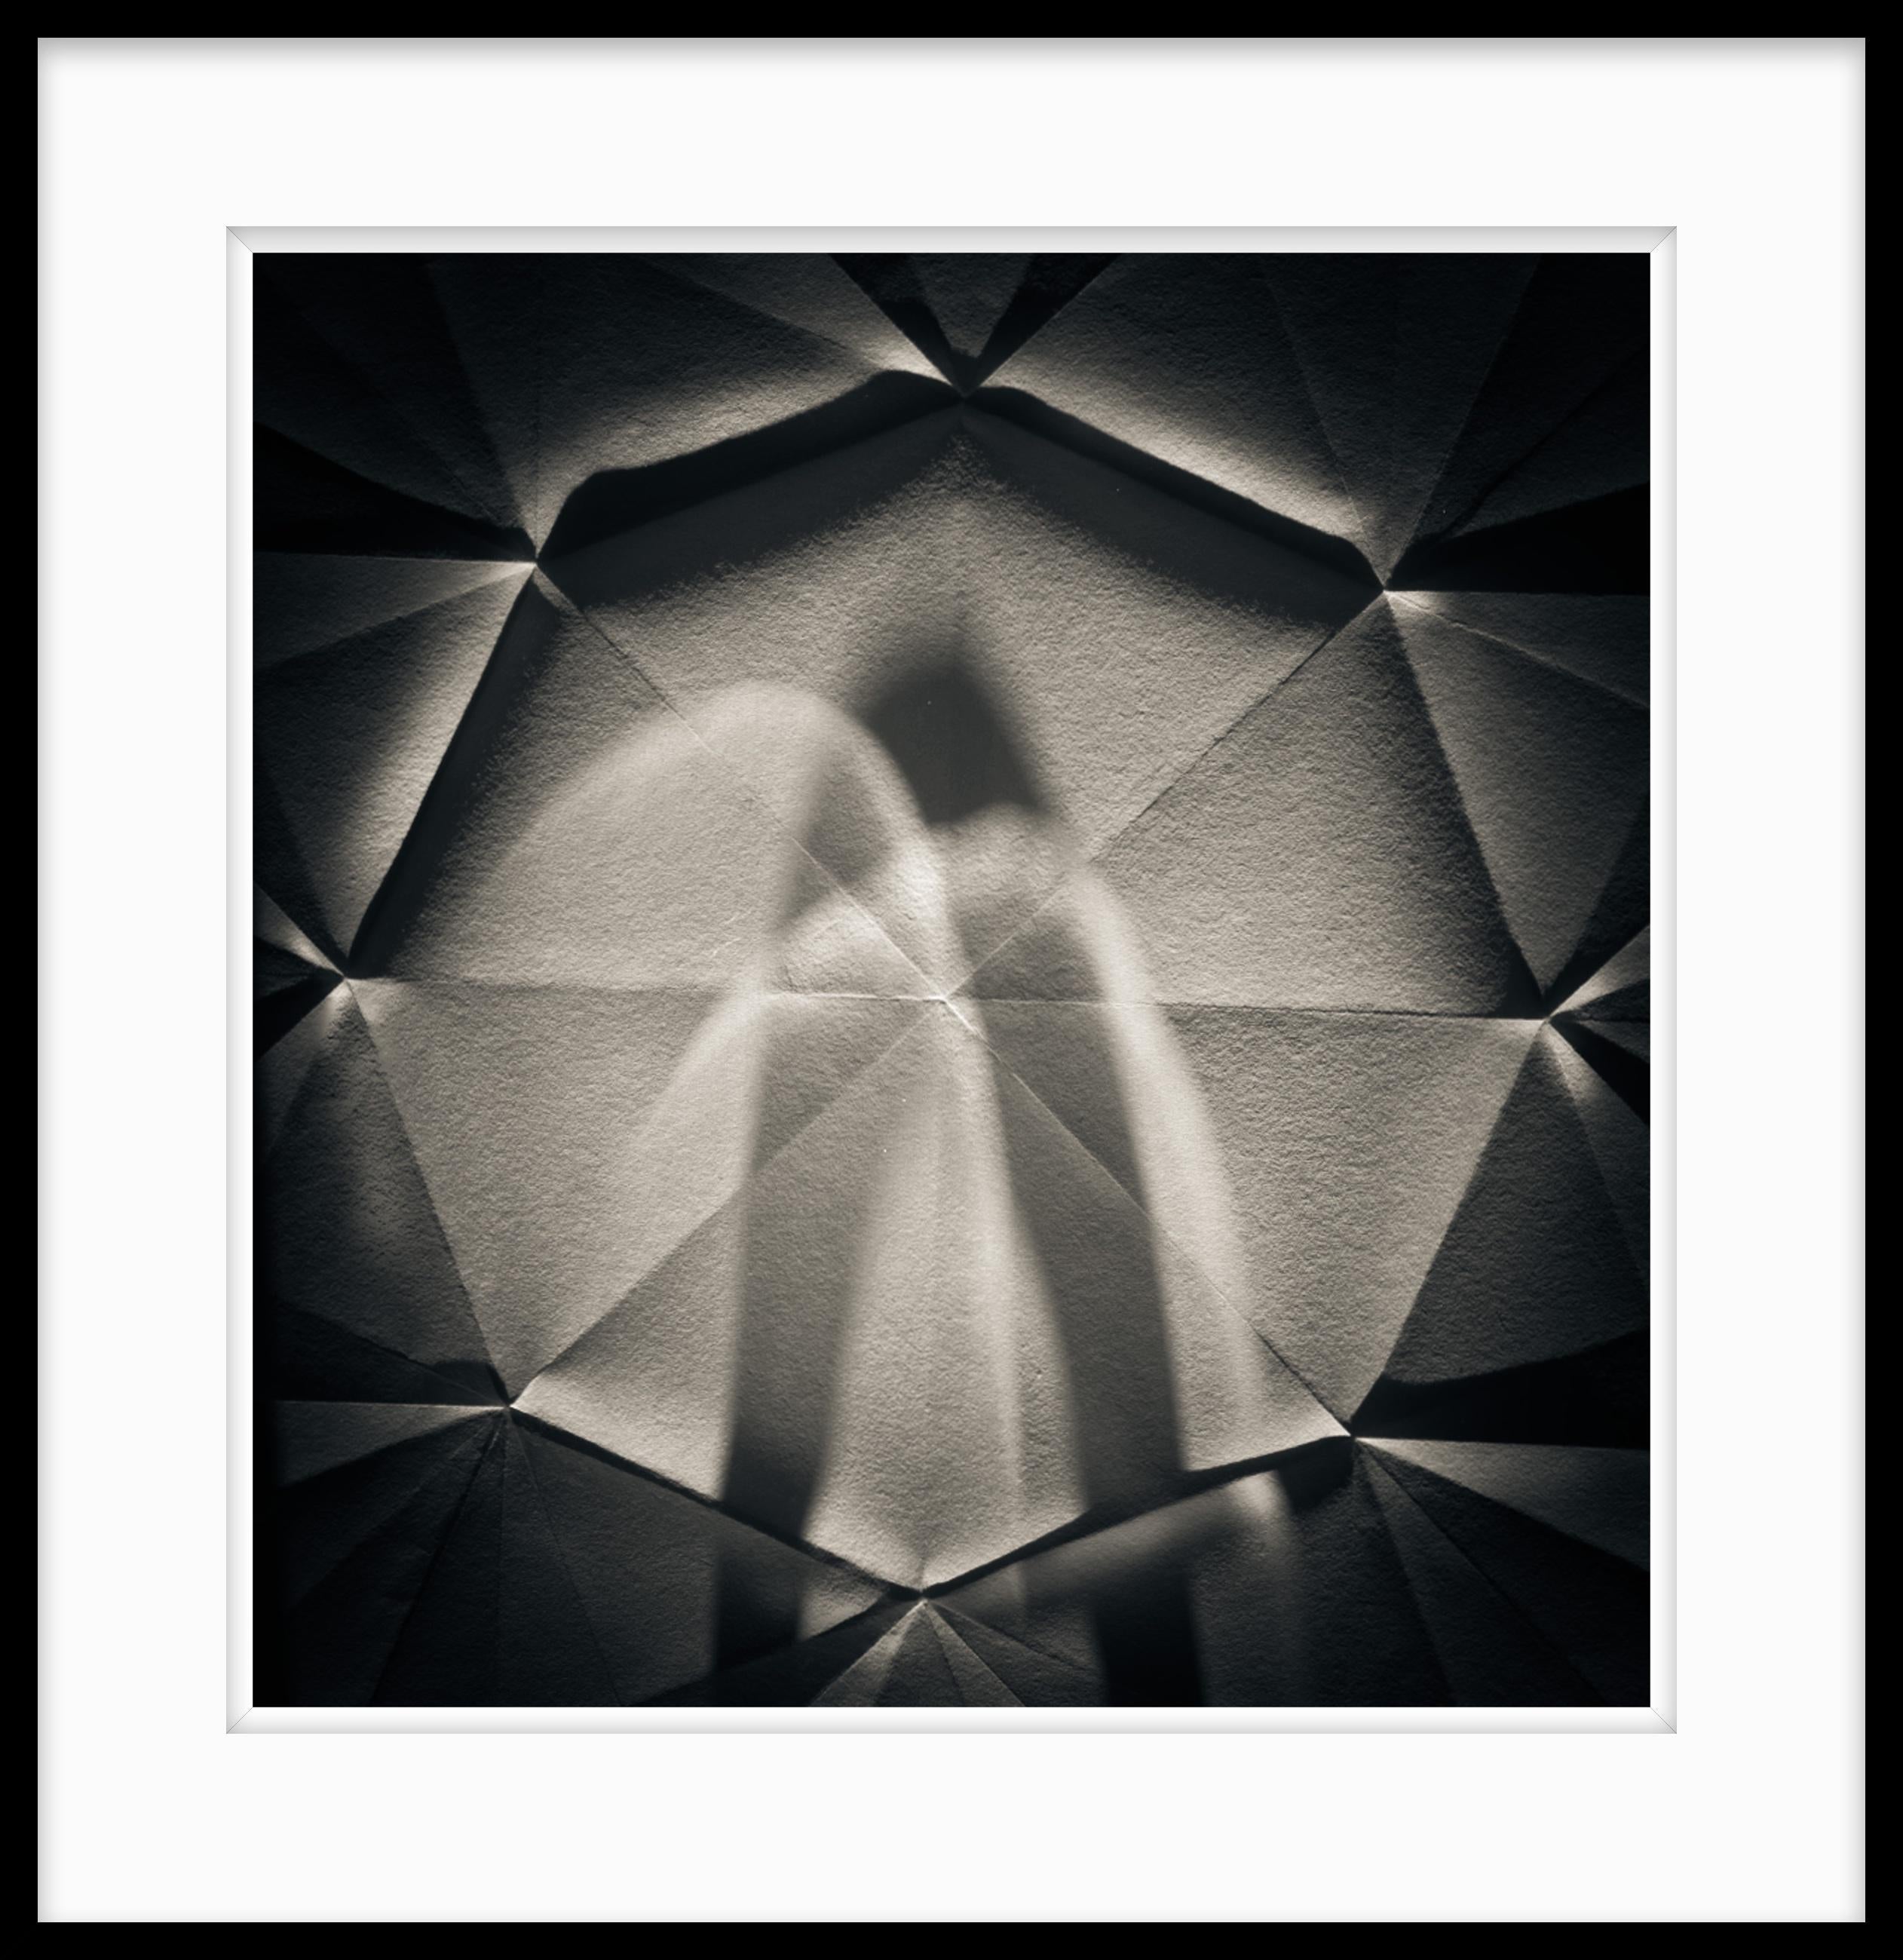  Limitierte Auflage 1 / 10 Schwarz-Weiß-Fotografie – Origami Abstrakt #73 – Photograph von Howard Lewis